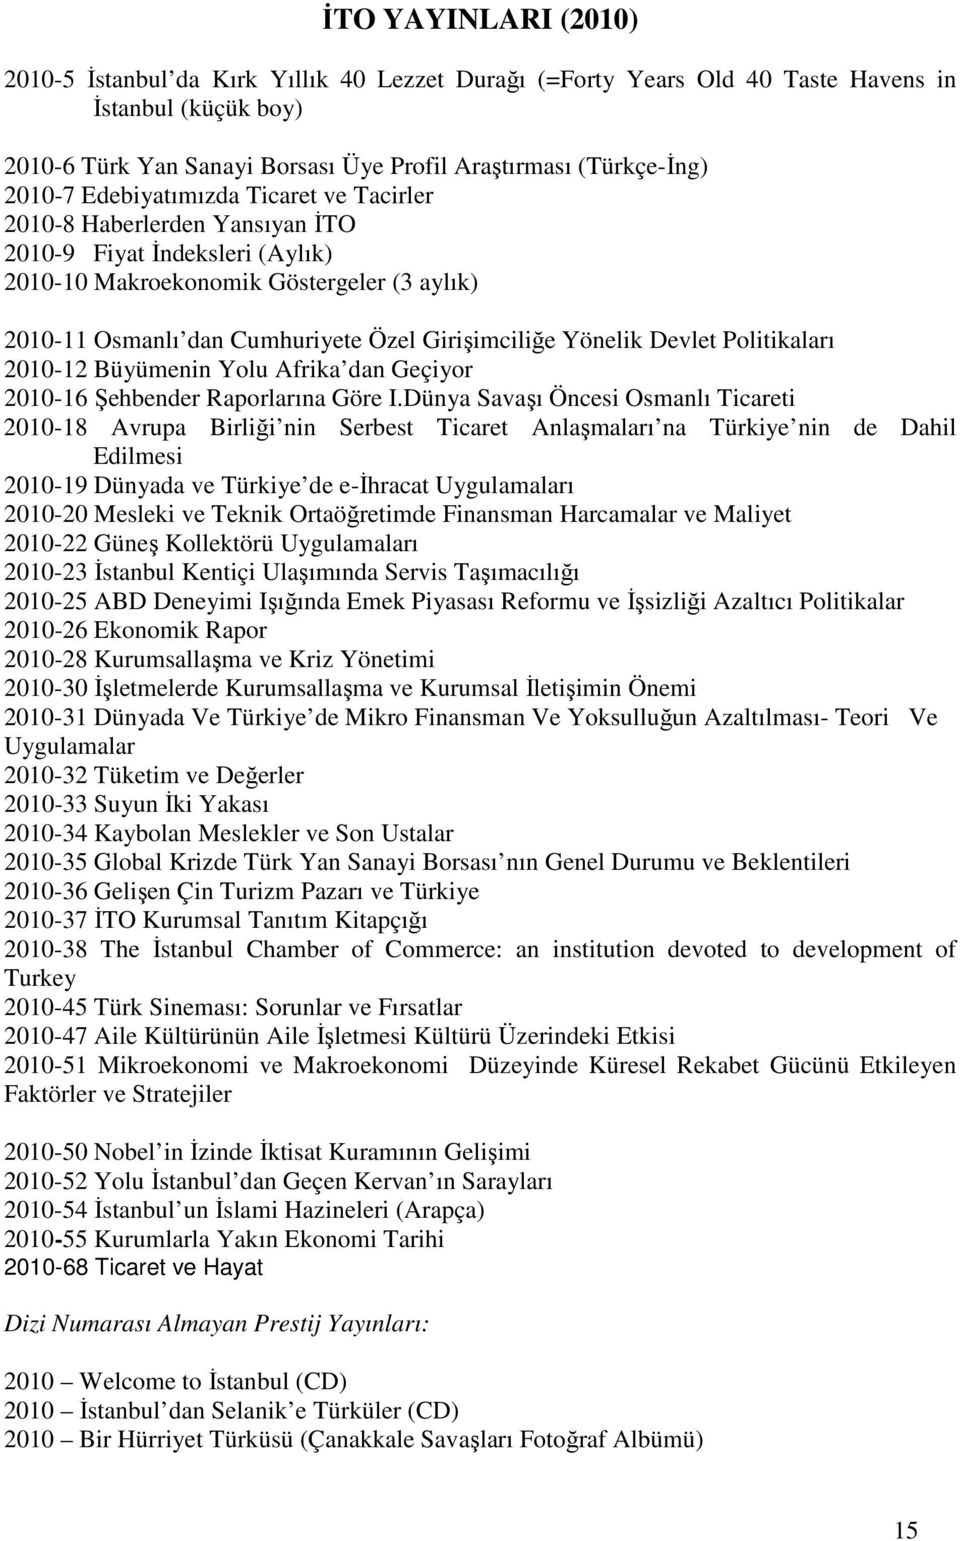 Girişimciliğe Yönelik Devlet Politikaları 2010-12 Büyümenin Yolu Afrika dan Geçiyor 2010-16 Şehbender Raporlarına Göre I.